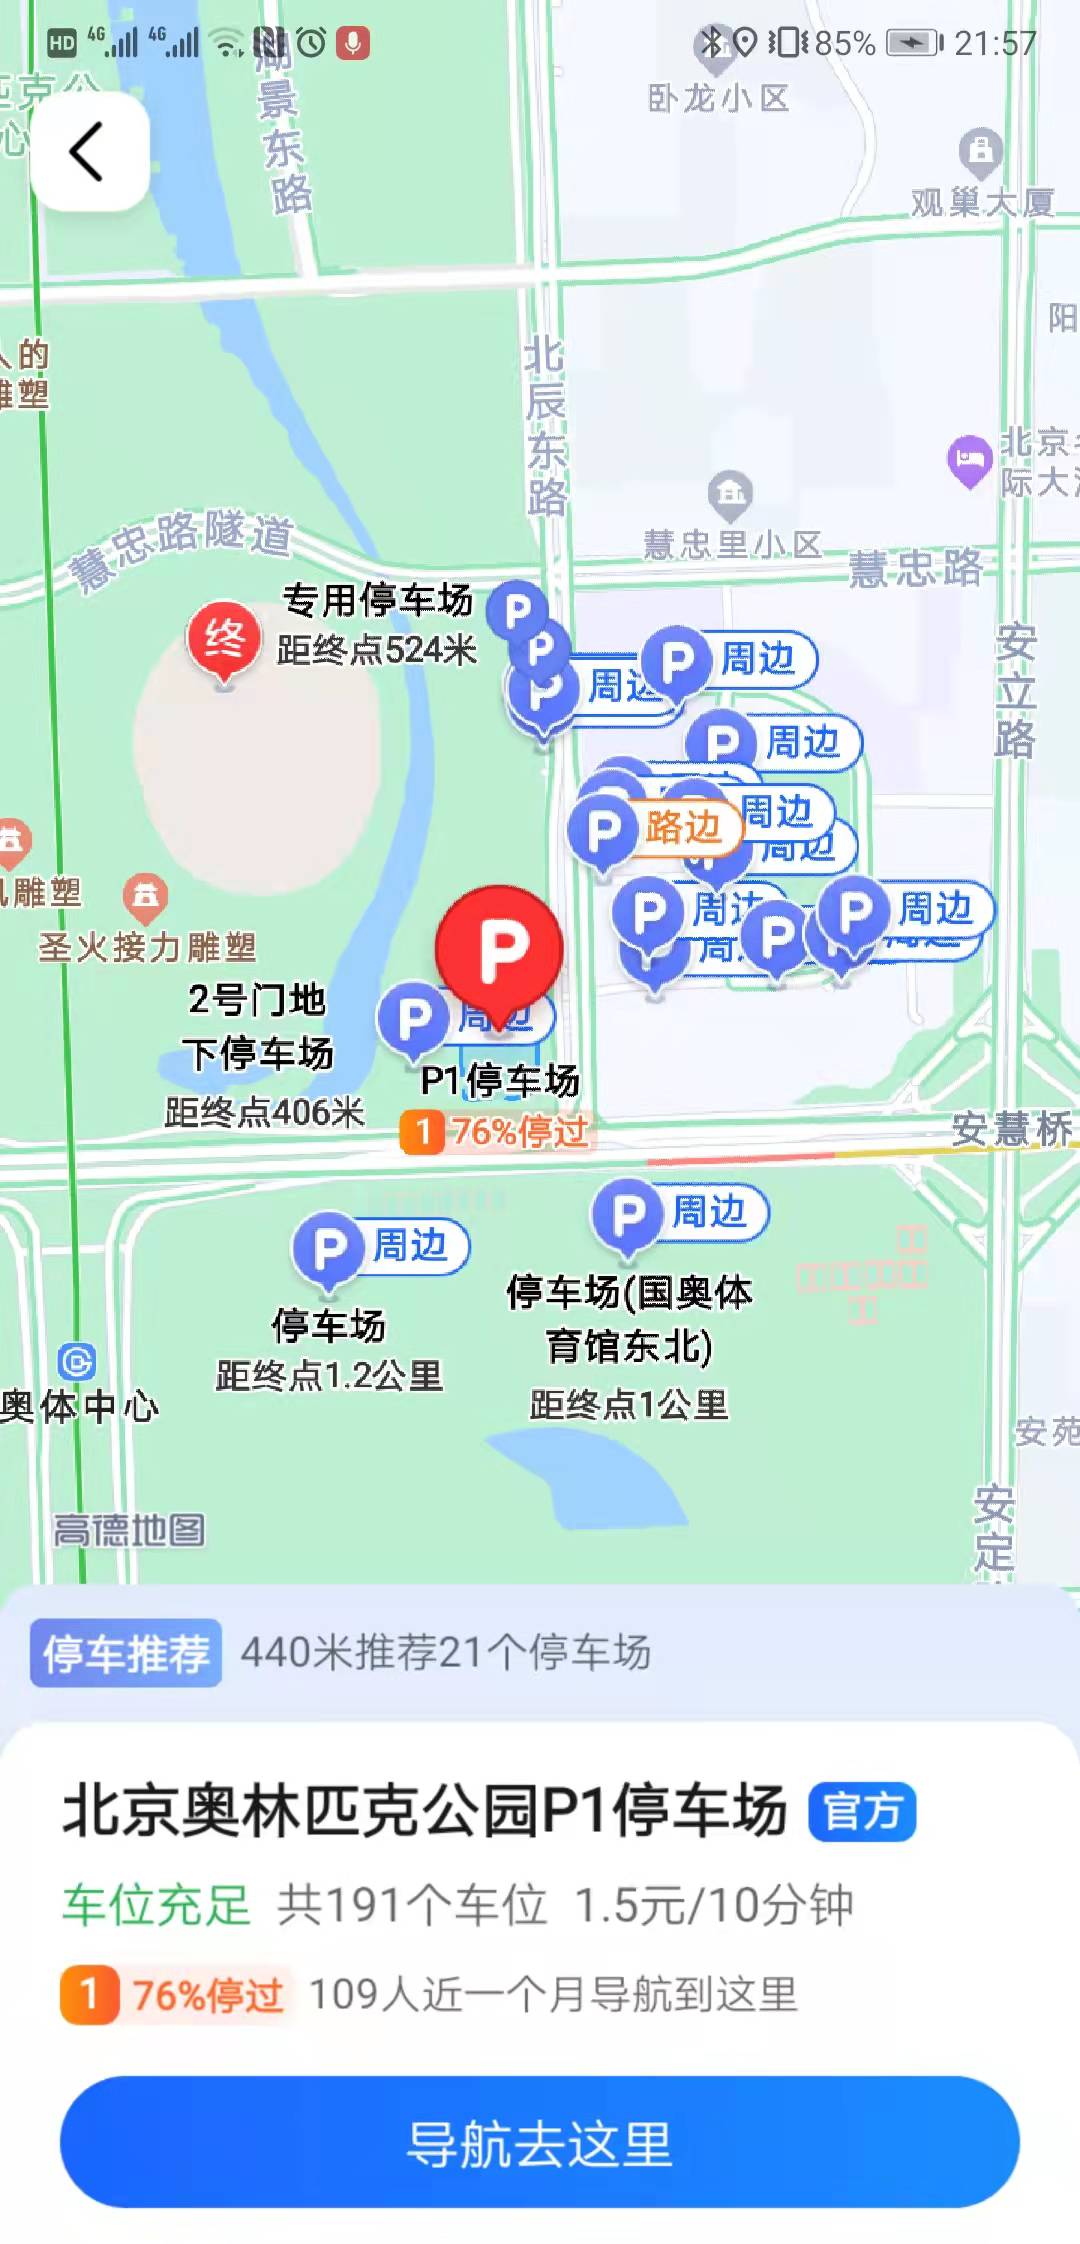 北京MaaS平台助力冬奥期间市民出行 高德地图上线专用道导航提示